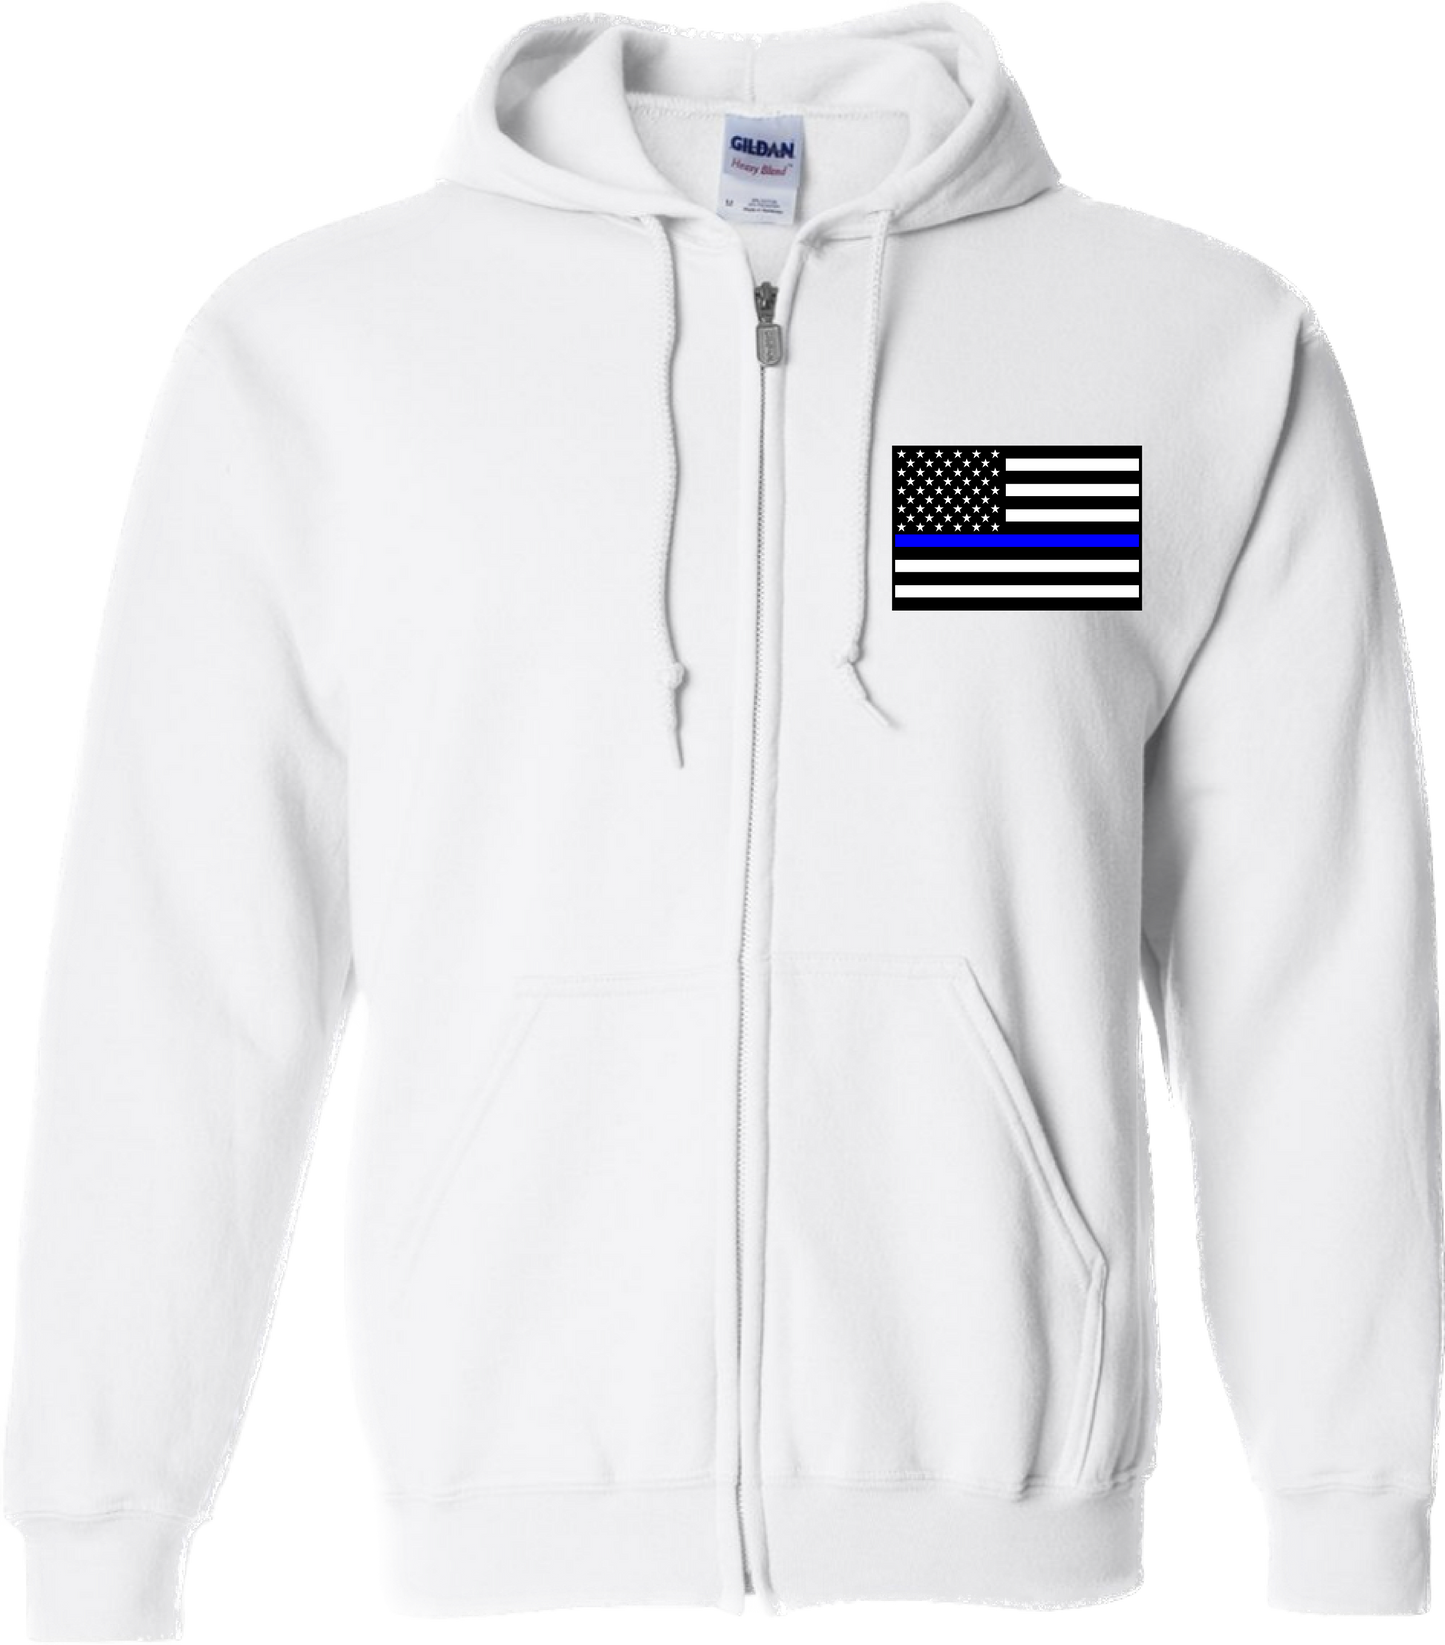 Thin Blue Line United States Flag Zip-Up Jacket